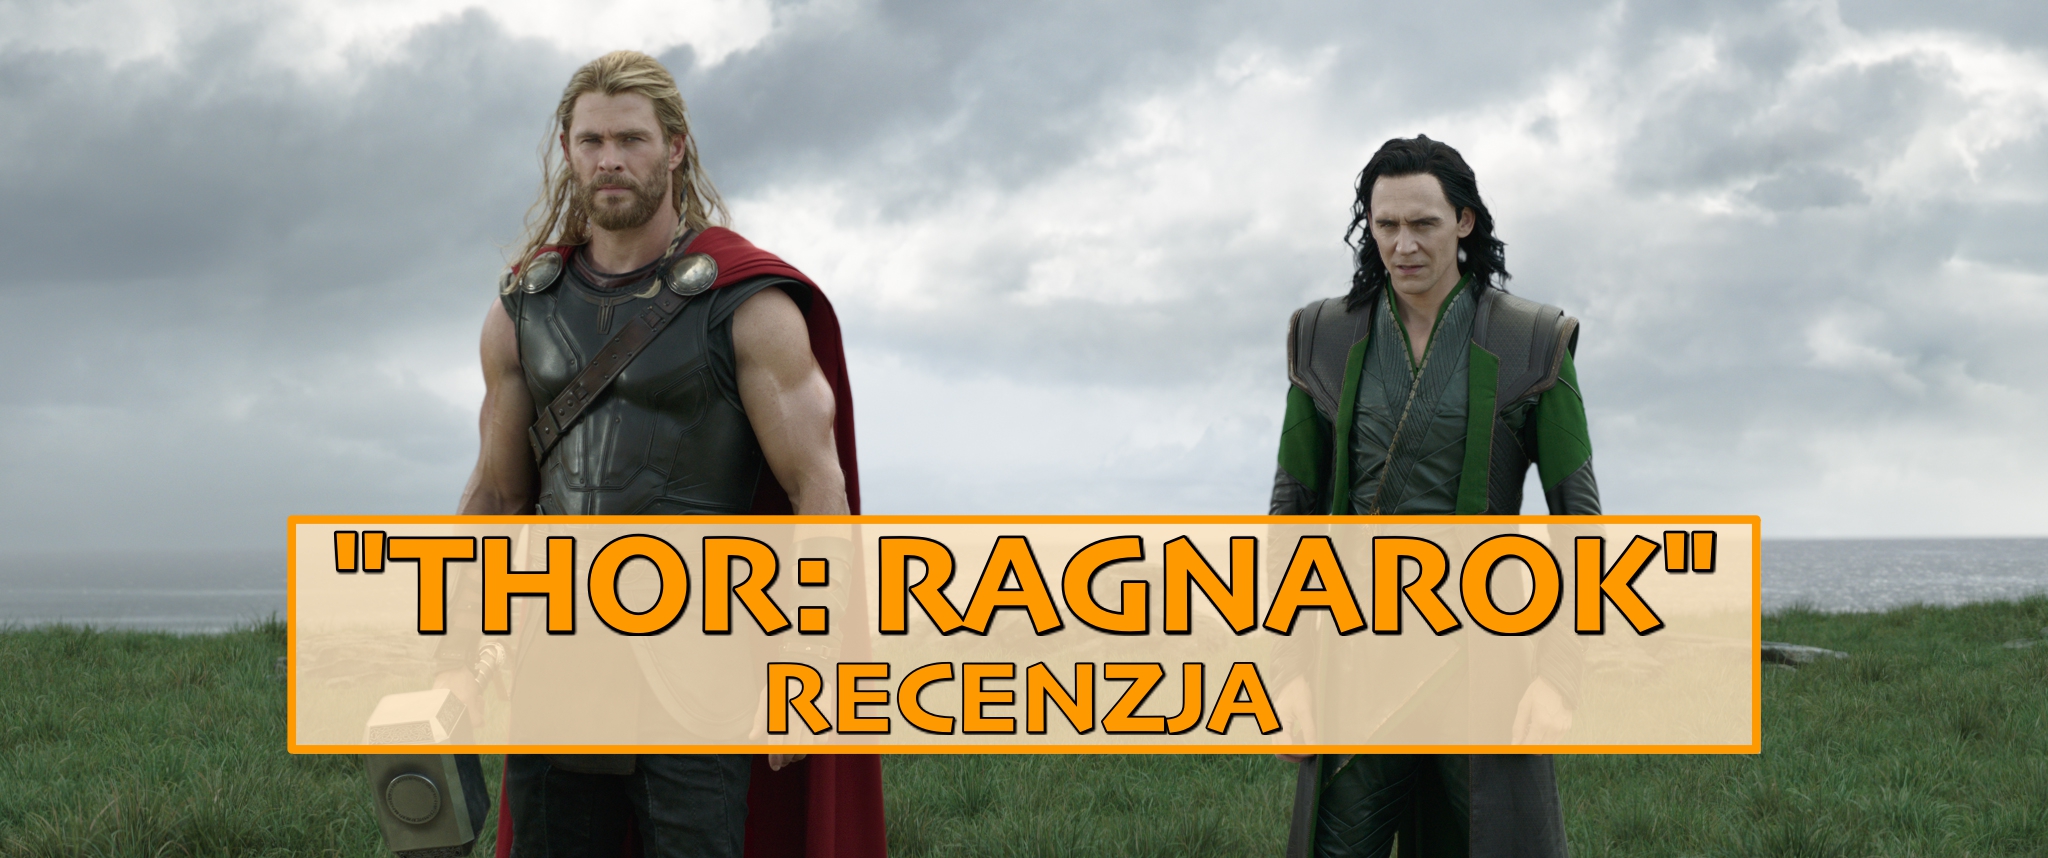 Cukierki, pałace i pioruny – recenzja „Thor: Ragnarok”